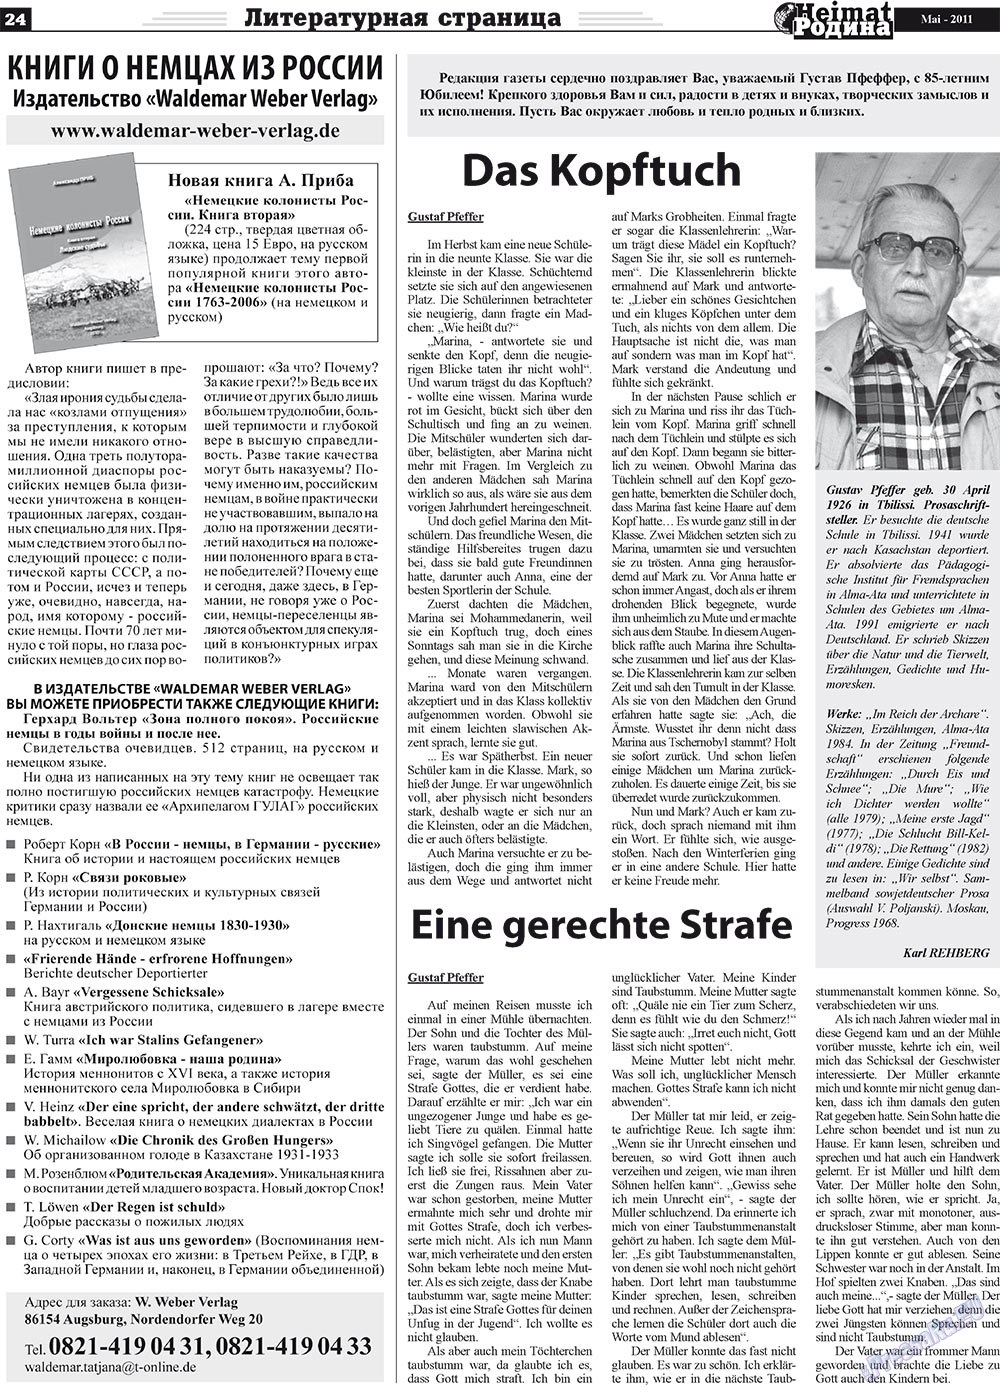 Heimat-Родина (газета). 2011 год, номер 5, стр. 24